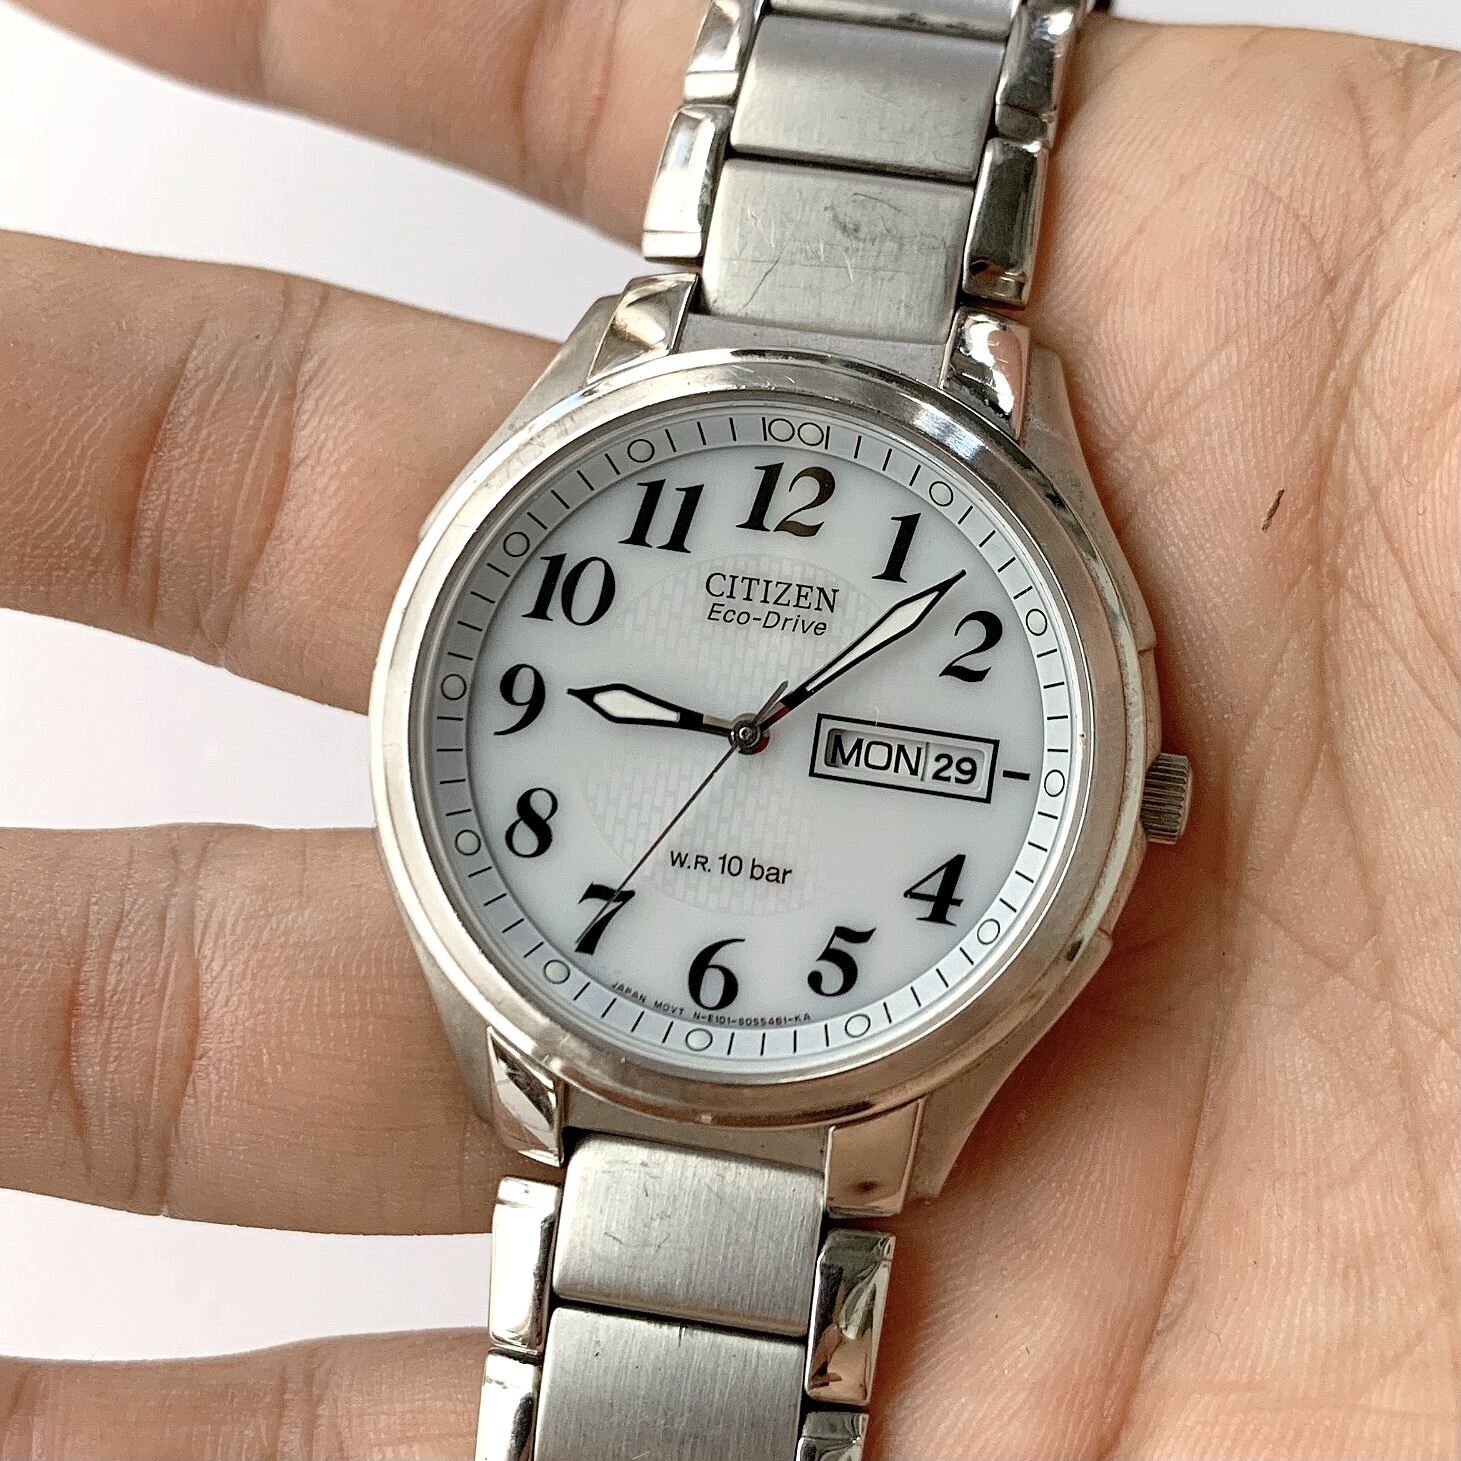 HCM]Đồng hồ chính hãng CITIZEN Eco-Drive nguyên zin 100% 